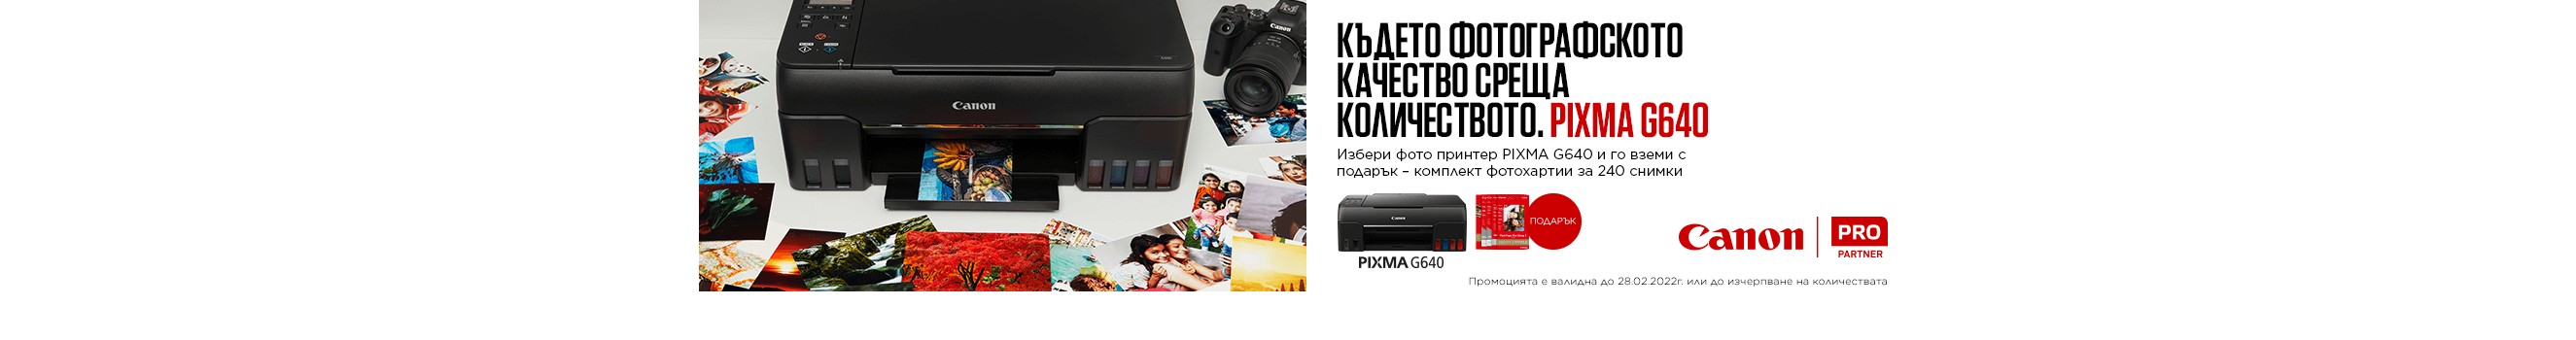 Принтер Canon Pixma G640 + подарък: фото хратии за 240 снимки в магазини ФотоСинтезис 